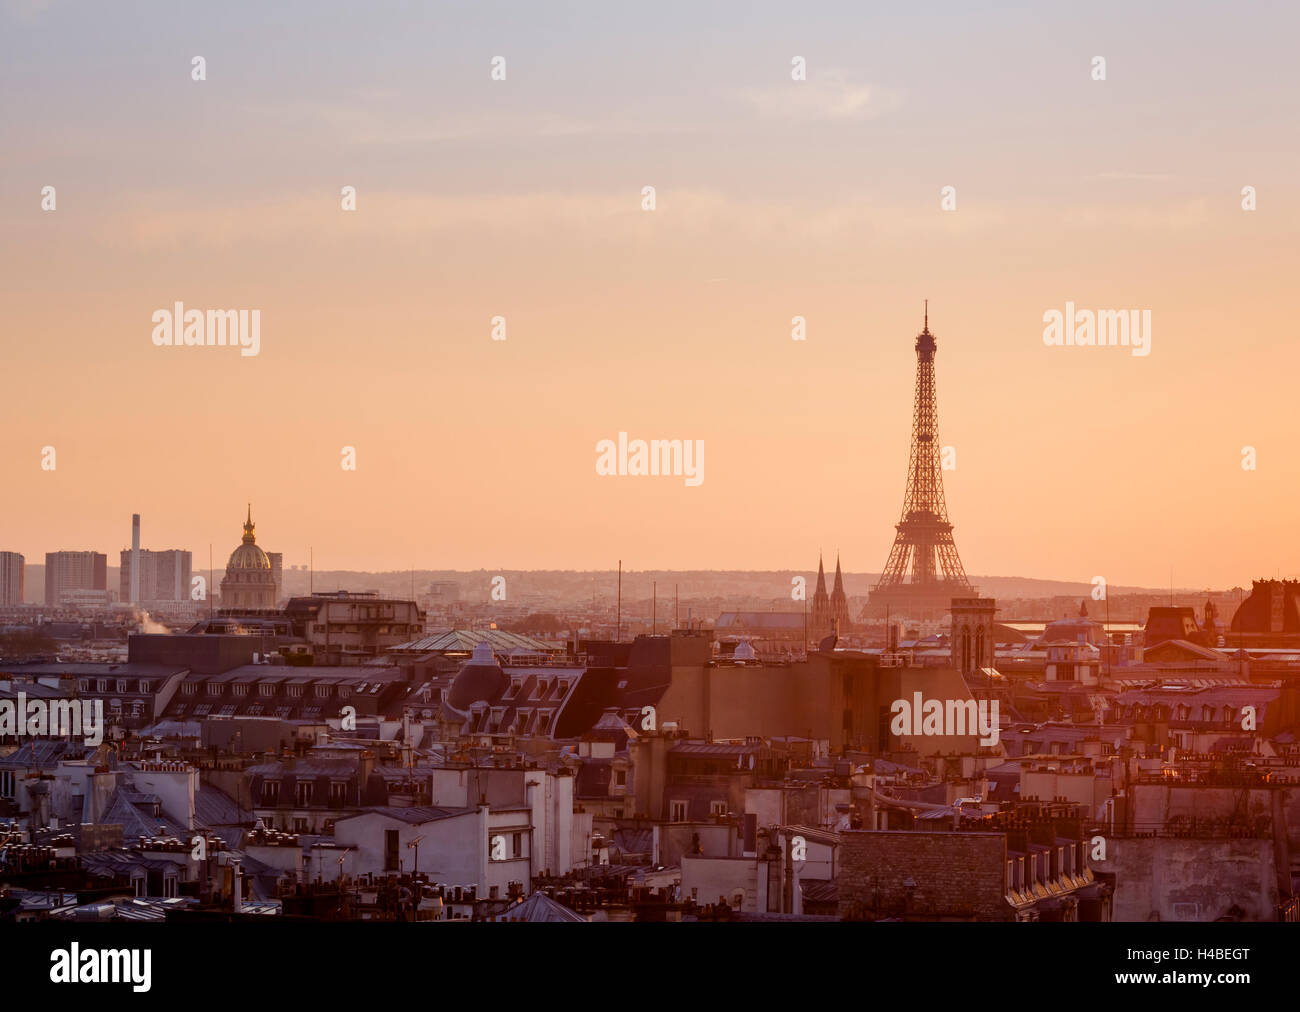 Vue panoramique sur Paris avec la Tour Eiffel et du centre Pompidou de clear sky at sunset Banque D'Images